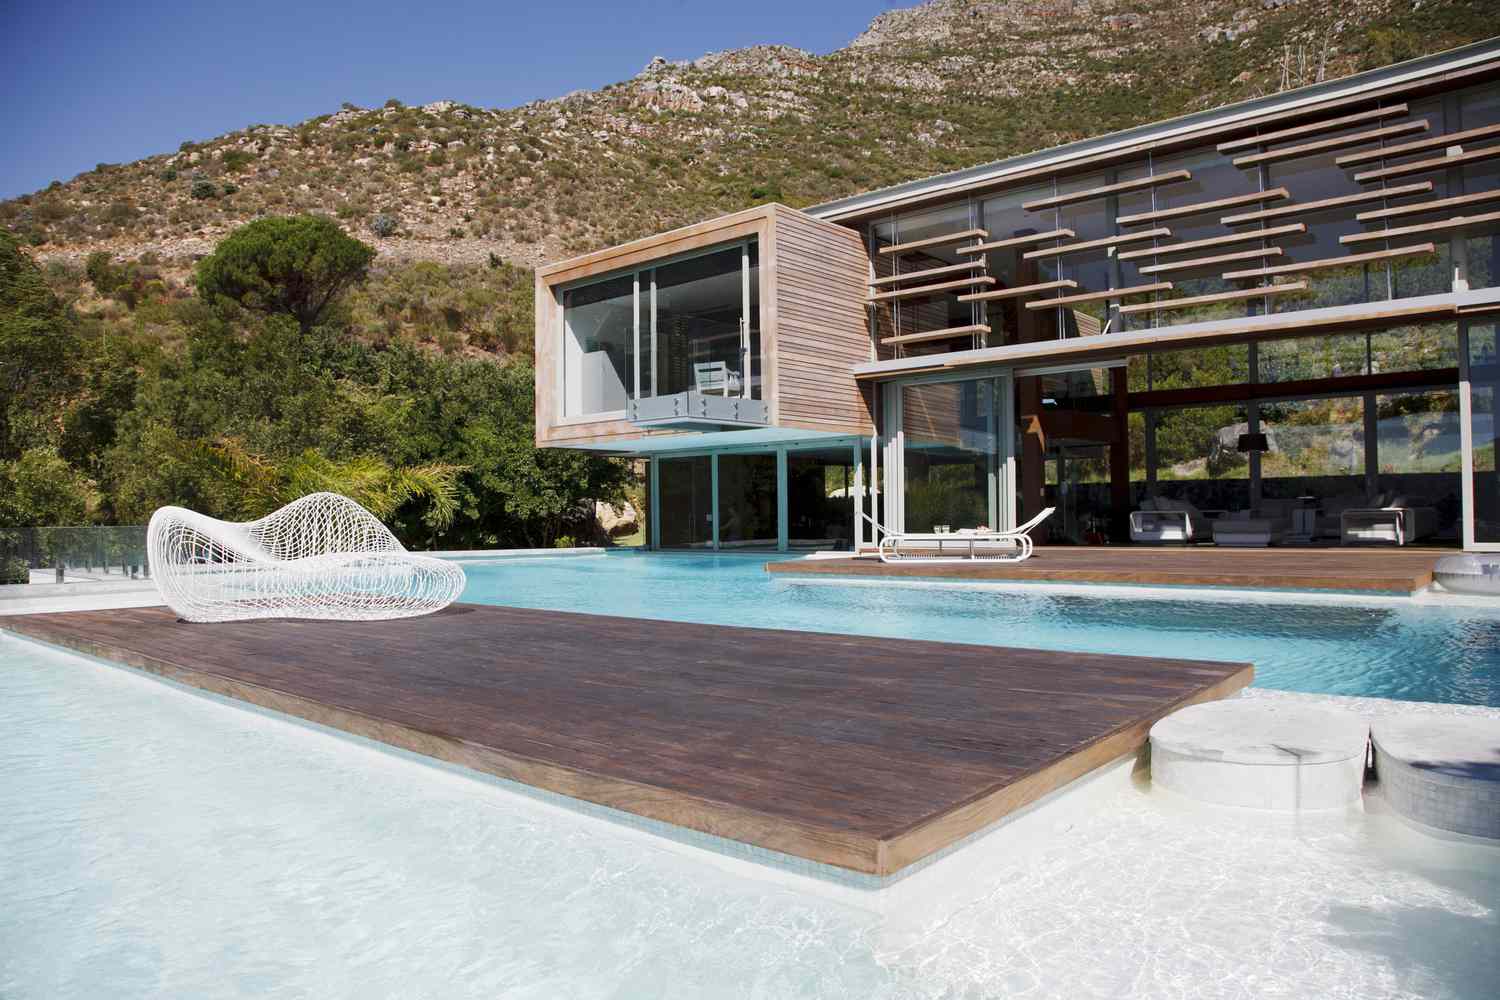 Una piscina moderna con casa moderna cerca de las montañas.